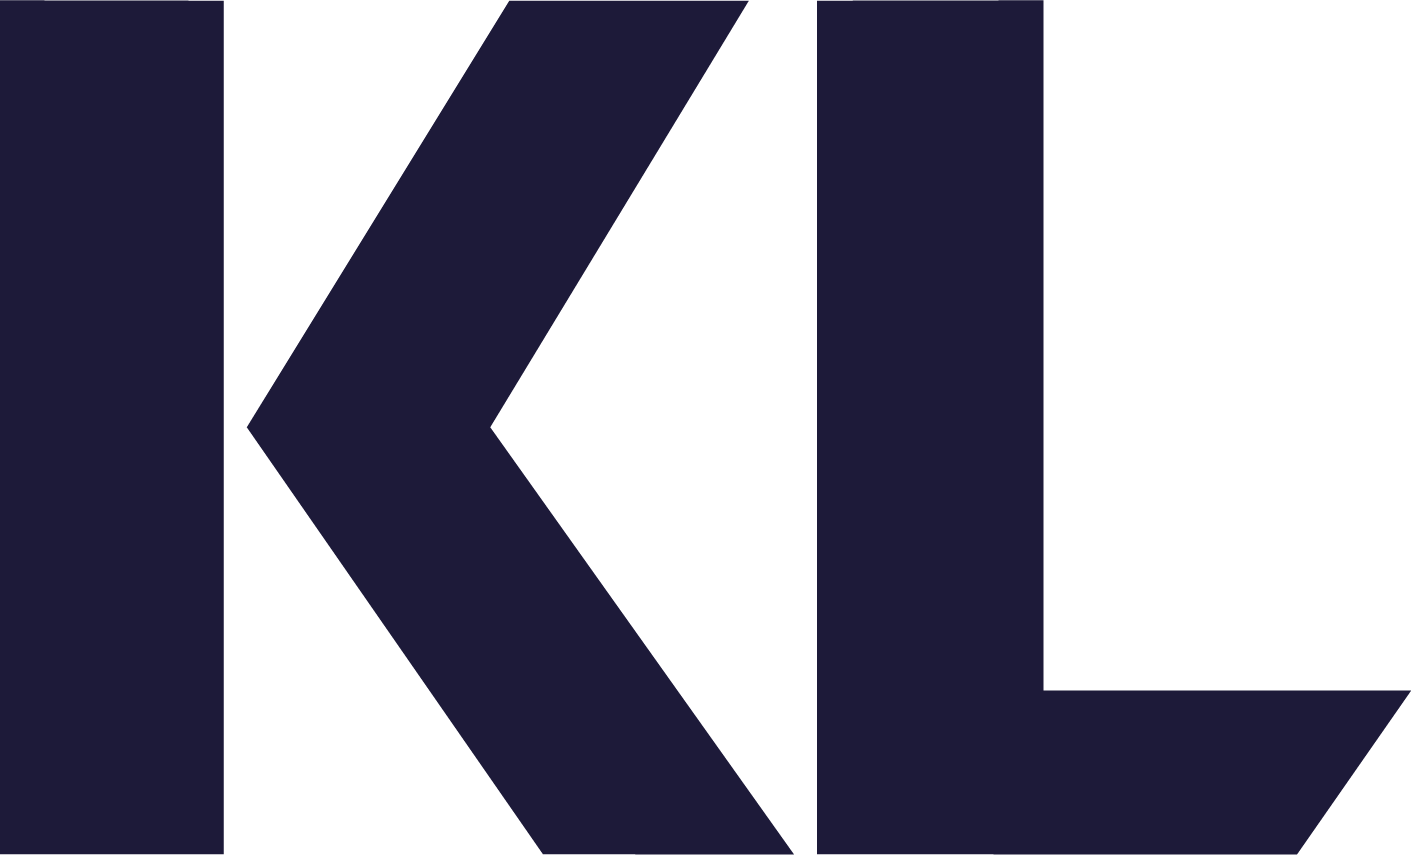 Digital modenhedsvurdering for kommuner logo